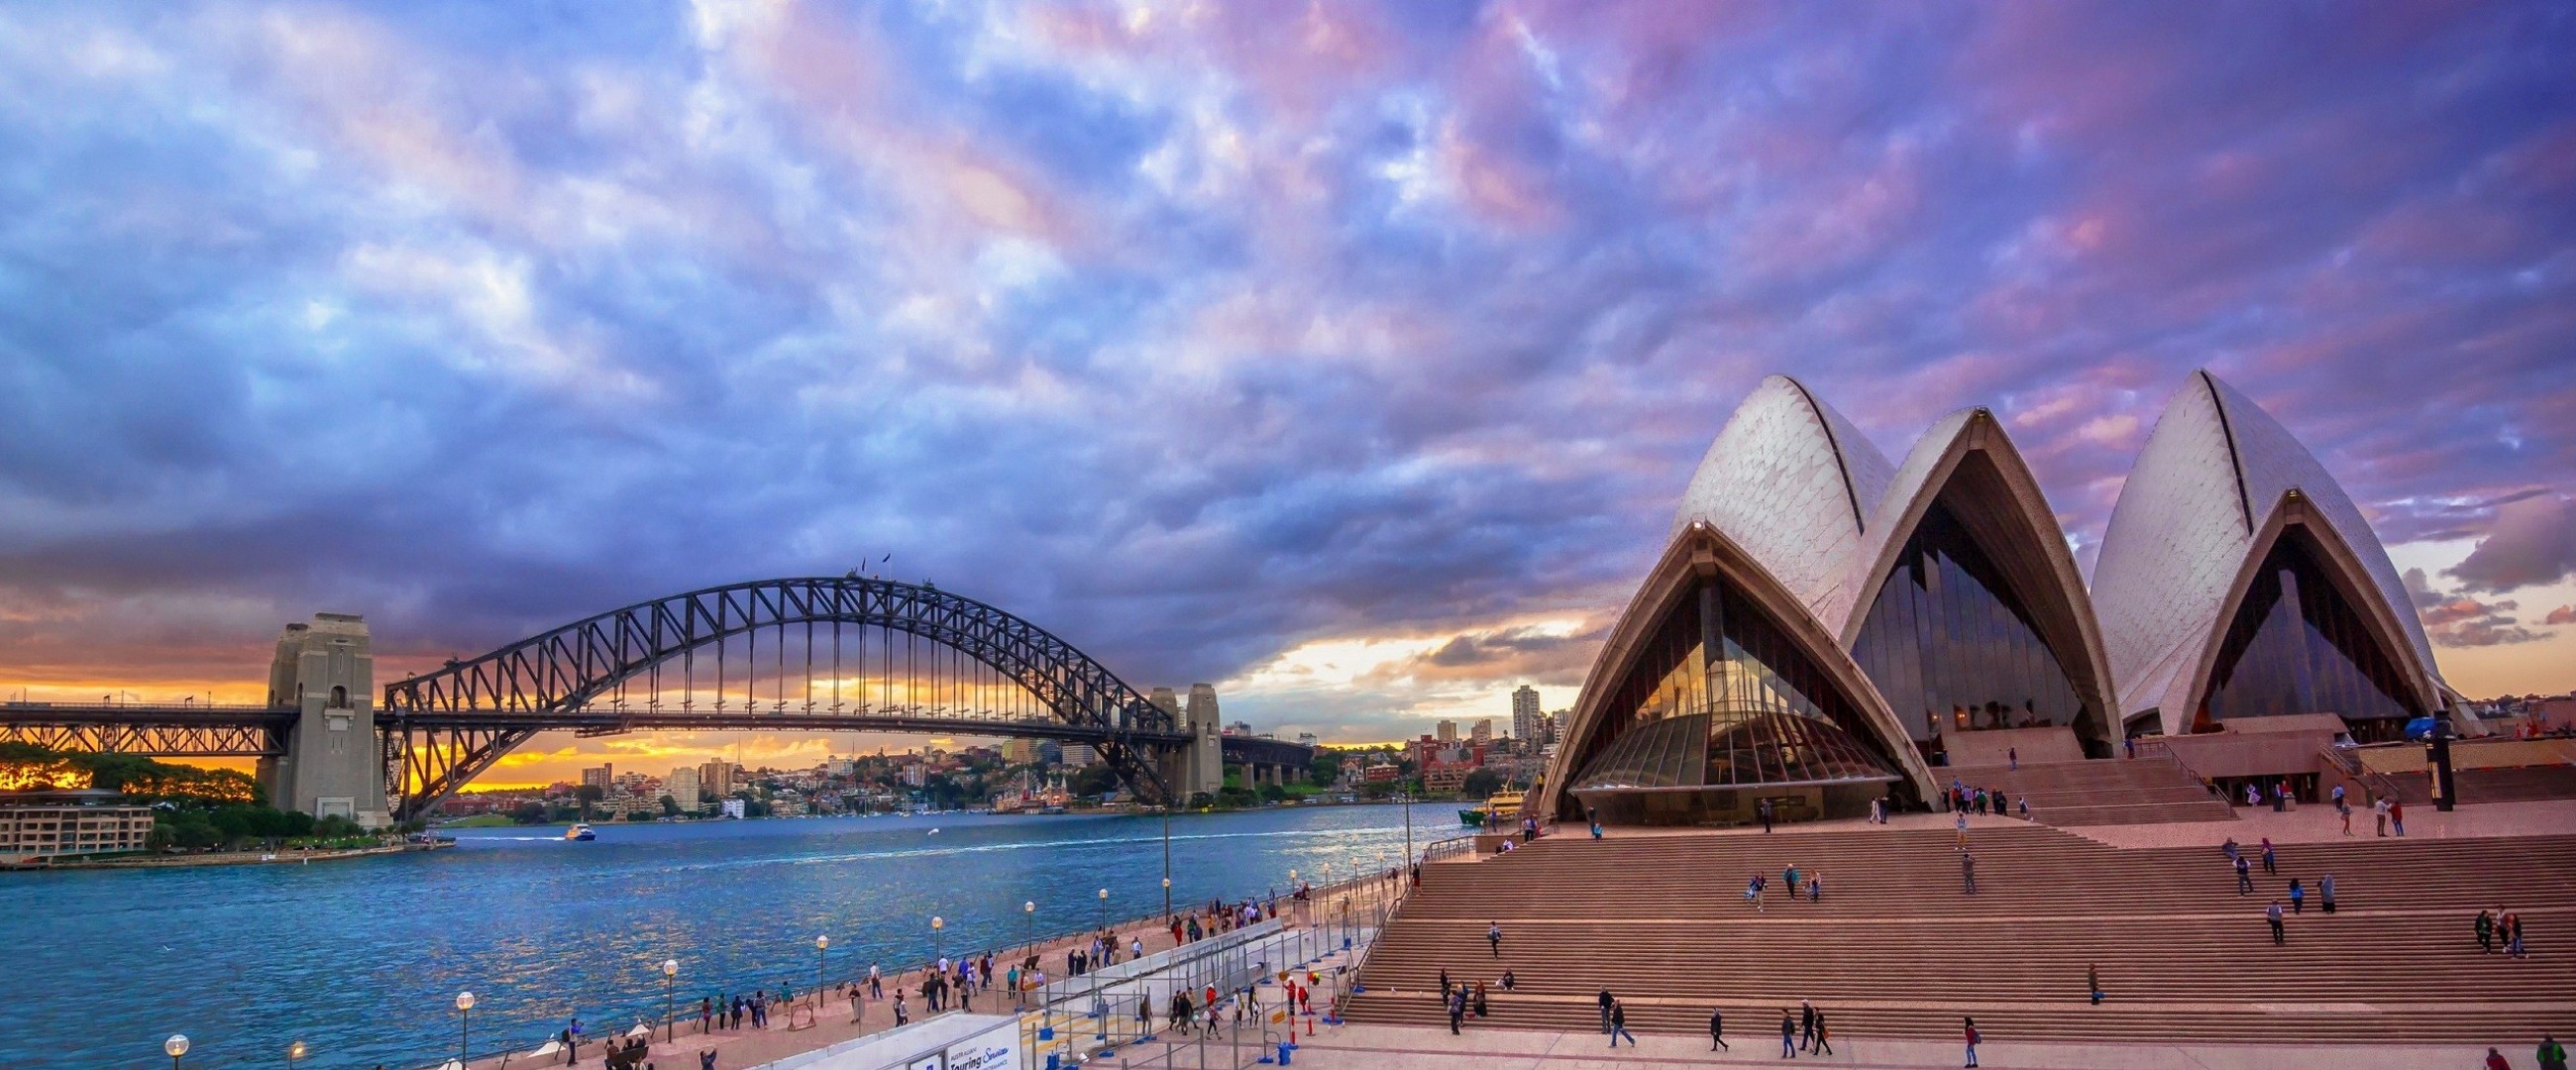 Скачать обои бесплатно Города, Облака, Сидней, Австралия, Харбор Бридж, Сиднейский Оперный Театр, Сделано Человеком картинка на рабочий стол ПК